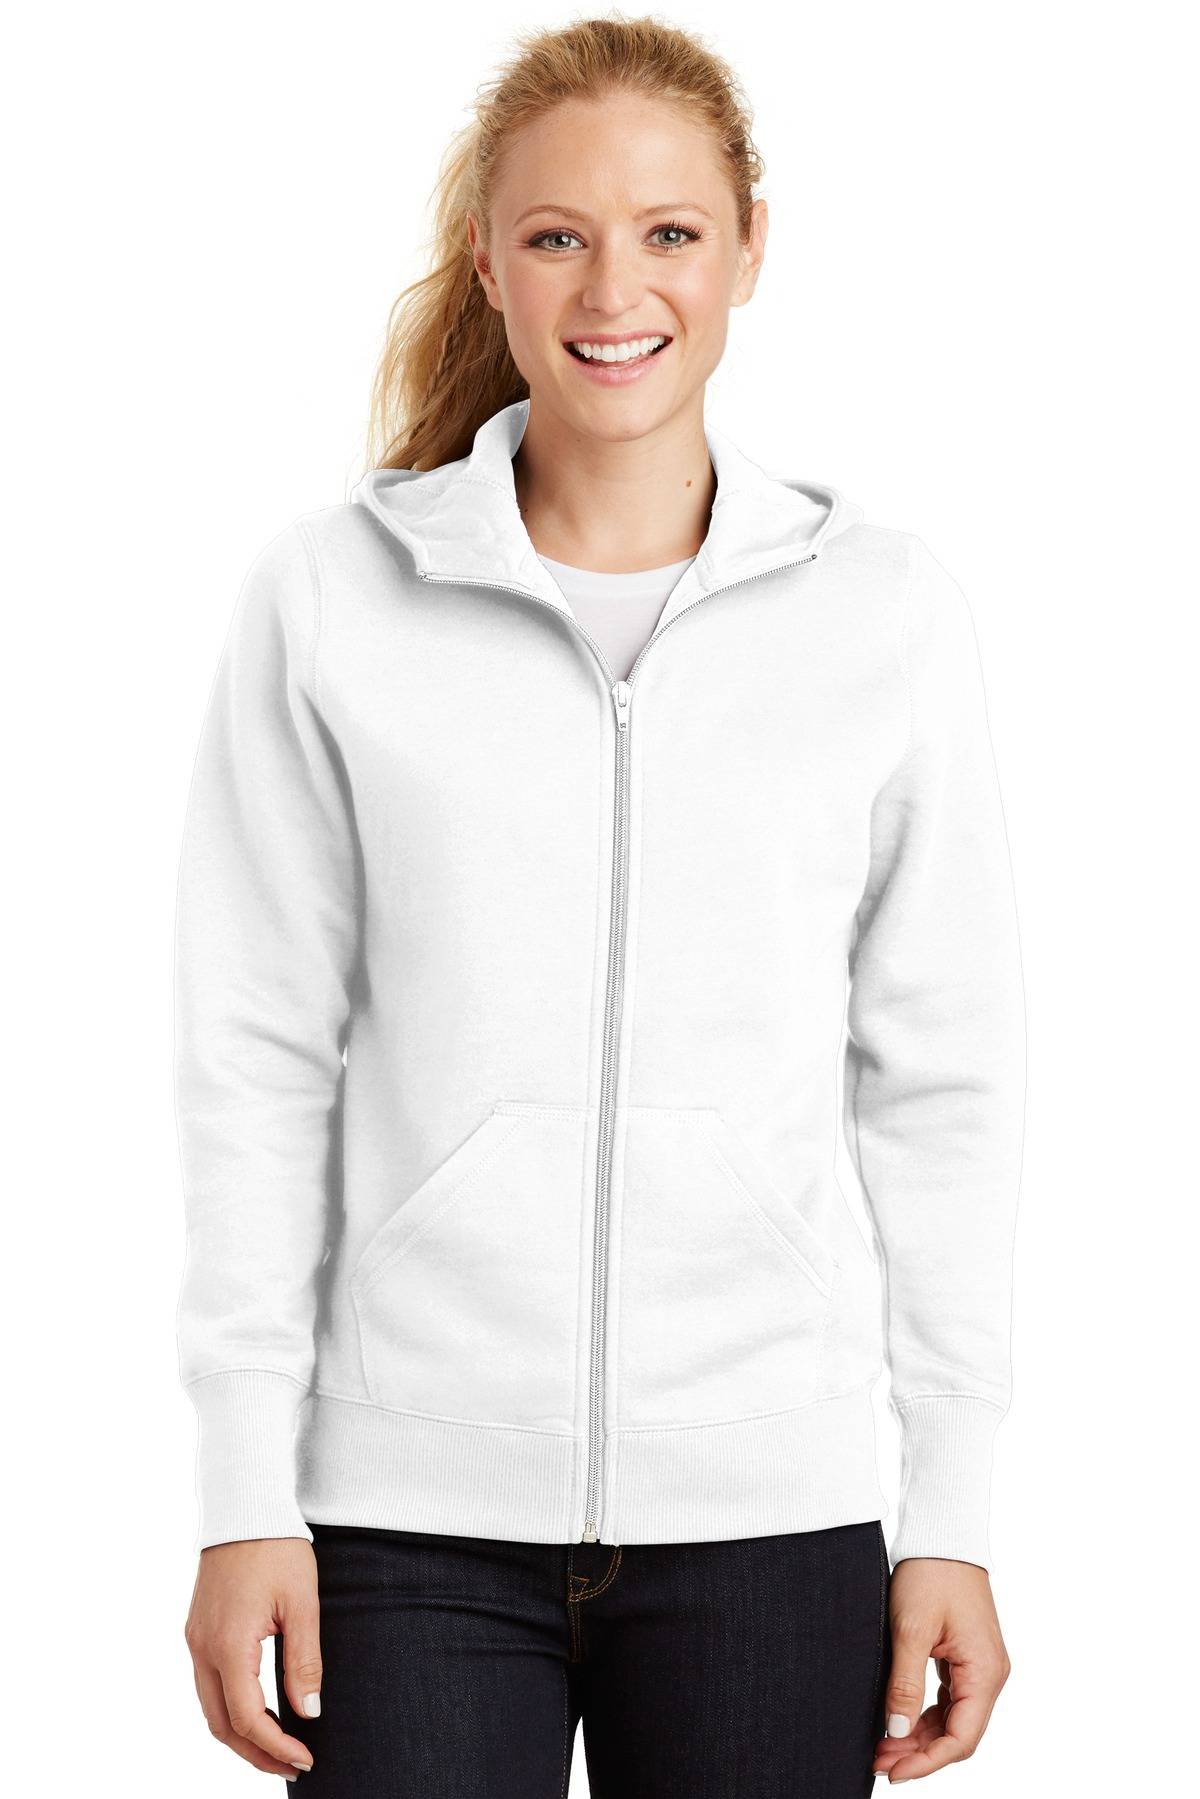 Sport-Tek L265 Womens Long Sleeve Full Zip Hooded Fleece Jacket With Pockets